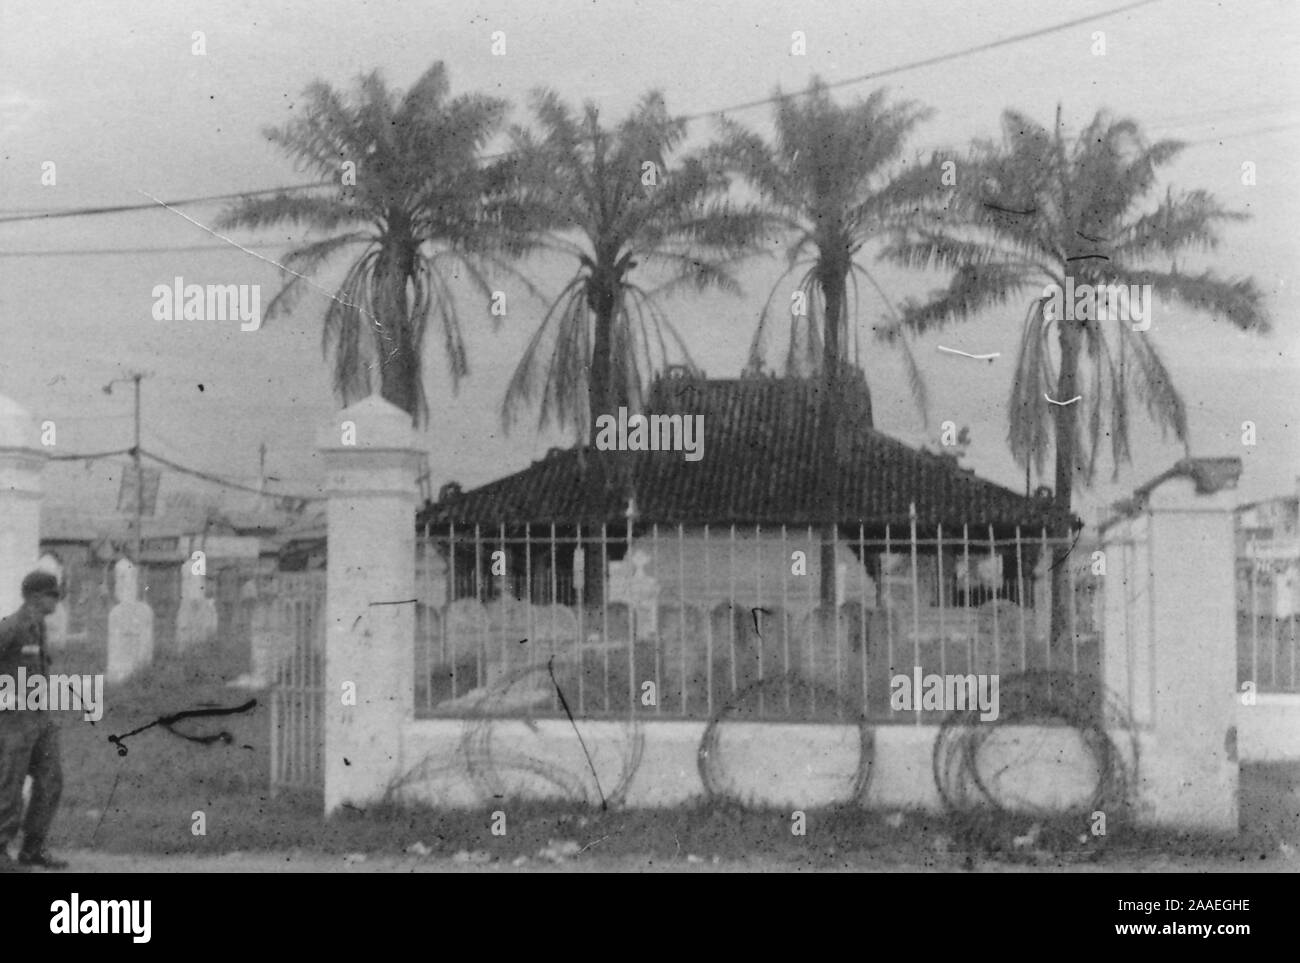 Un militaire en uniforme passe devant la porte ouverte d'un temple bouddhiste avec un sol carrelé, de la hanche et toit, stèle et quatre palmiers dans la cour avant, et de barbelés s'appuyant sur le mur extérieur, Saigon, Vietnam, 1966. () Banque D'Images